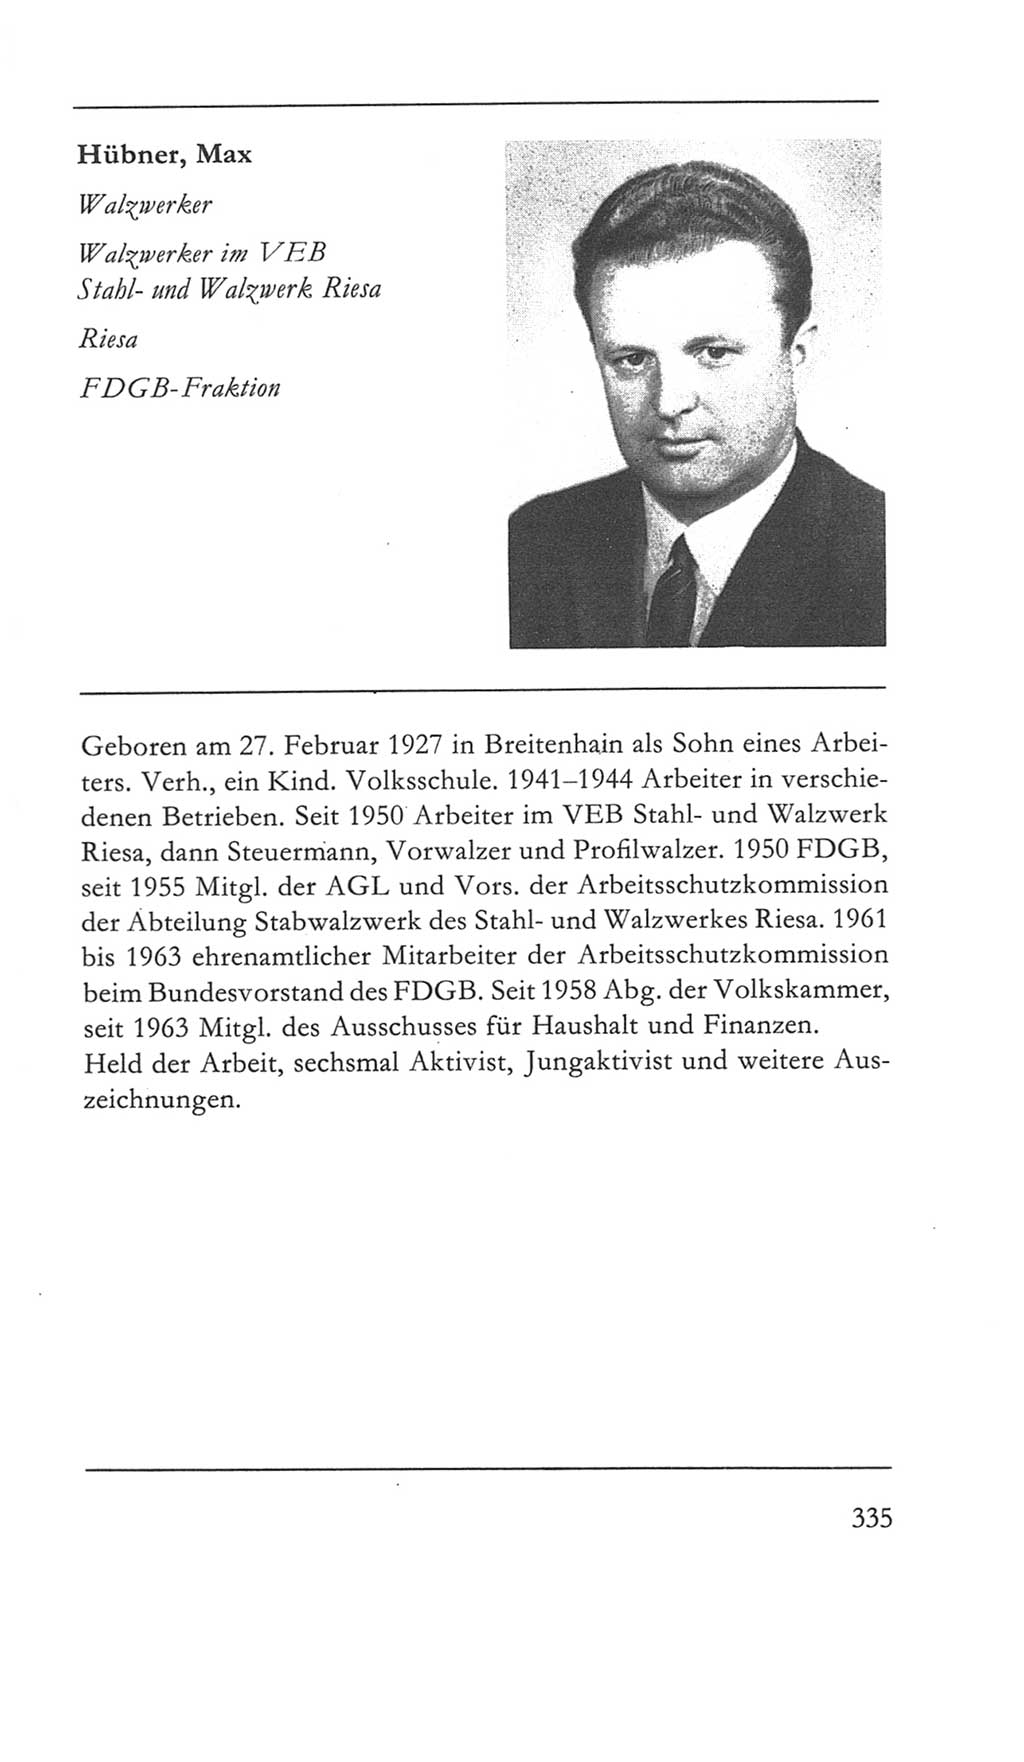 Volkskammer (VK) der Deutschen Demokratischen Republik (DDR) 5. Wahlperiode 1967-1971, Seite 335 (VK. DDR 5. WP. 1967-1971, S. 335)